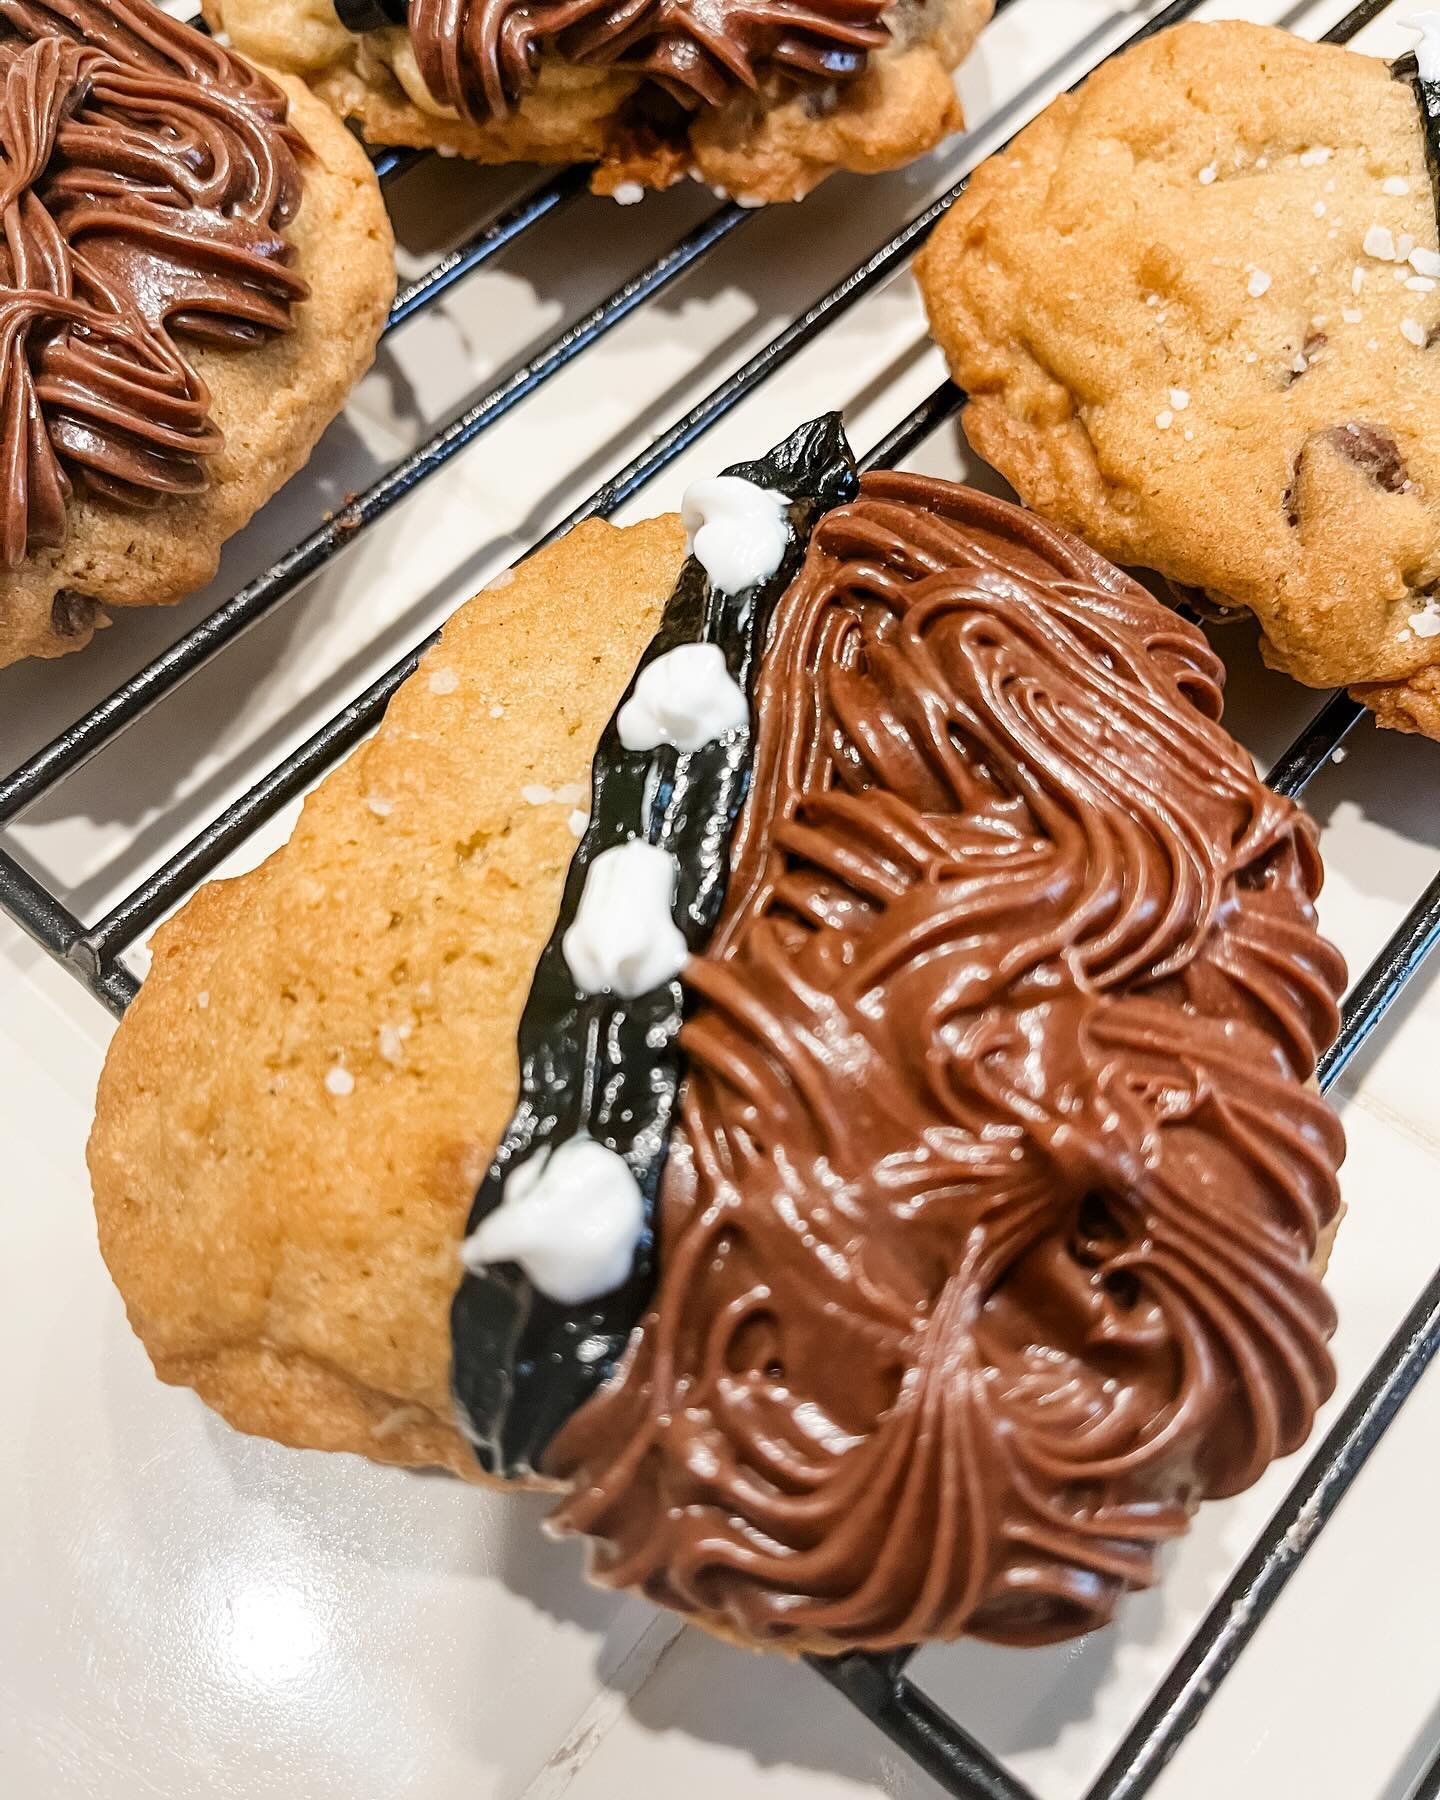 we bake too! #wookiecookies #maythe4thbewithyou